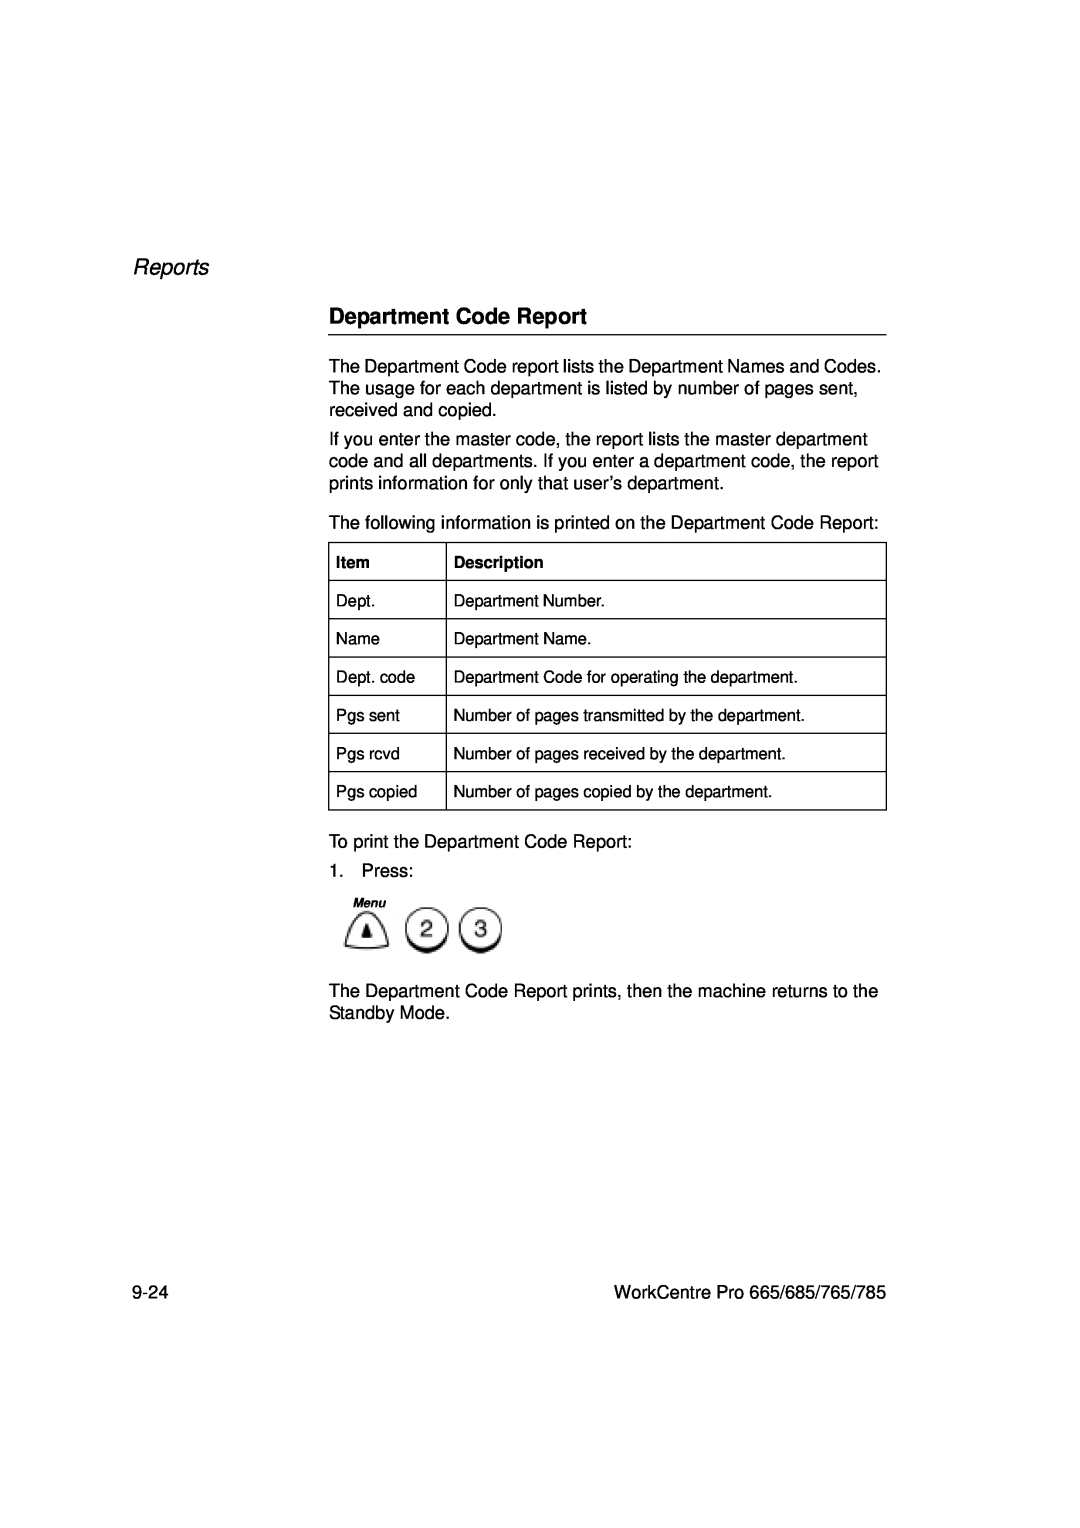 Xerox 685, 765, 665, 785 manual Department Code Report, Reports 